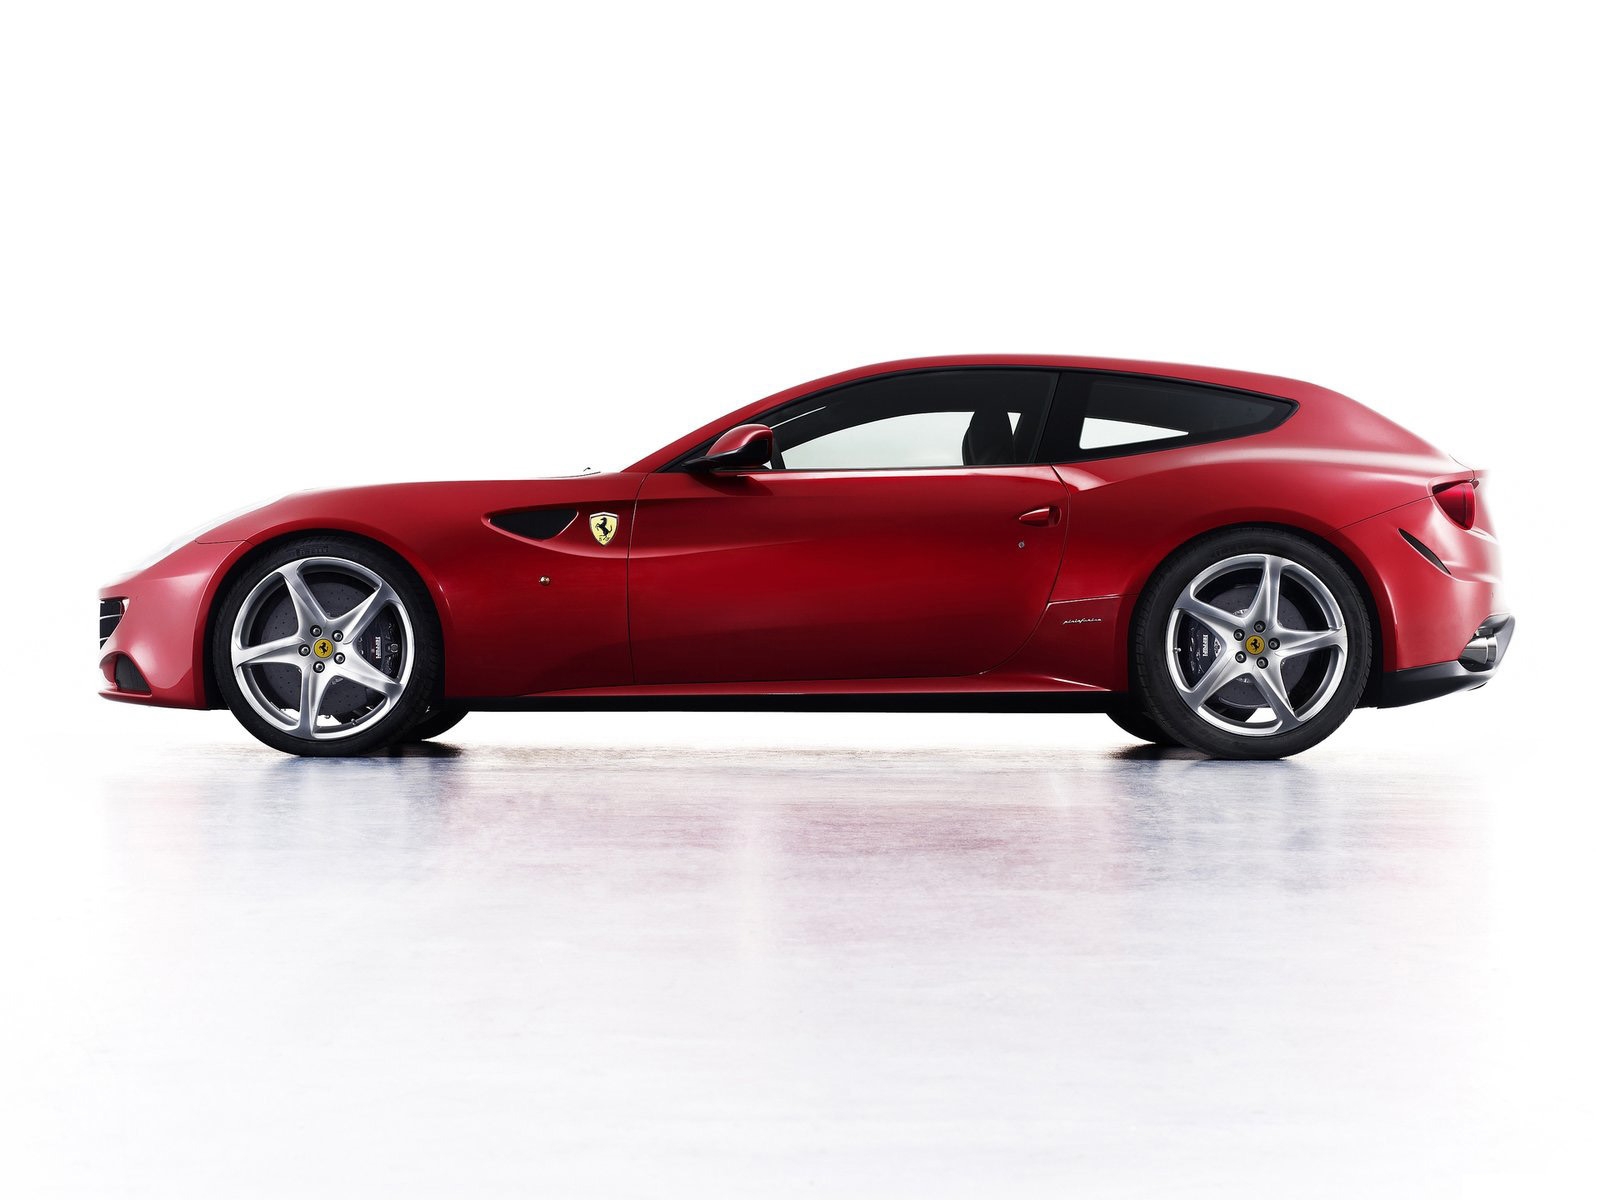 Ferrari FF 2011 for 1600 x 1200 resolution